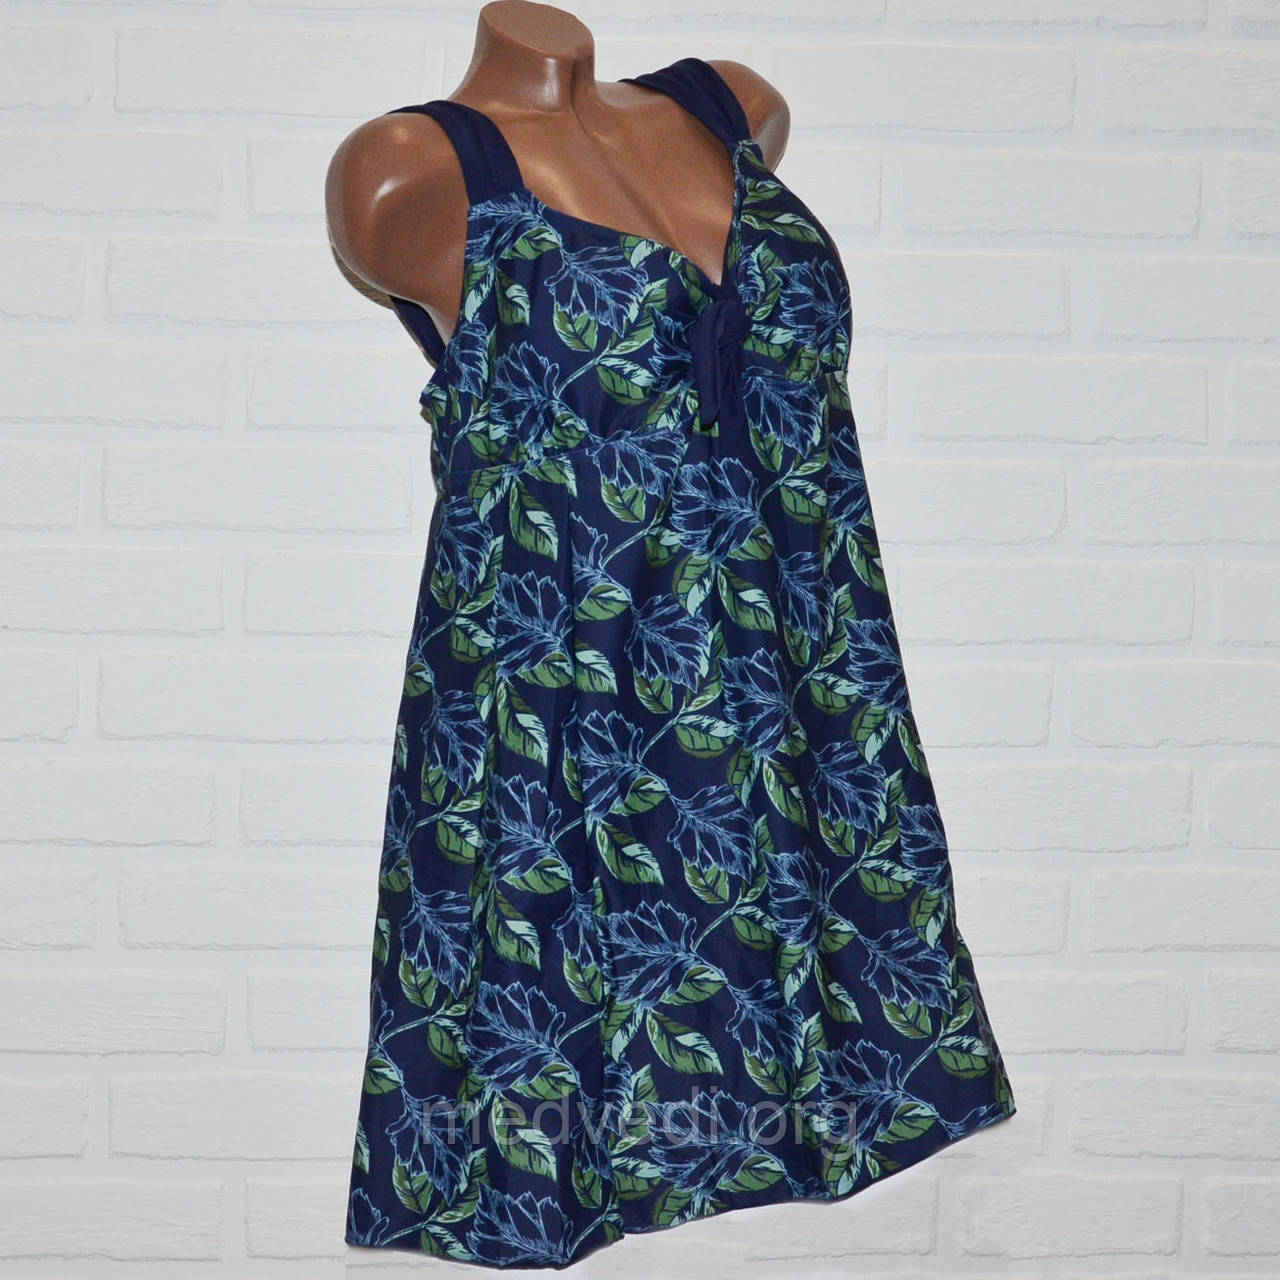 Синьо-зелений купальник сукня 70 розмір, пляжний одяг для пишних дам